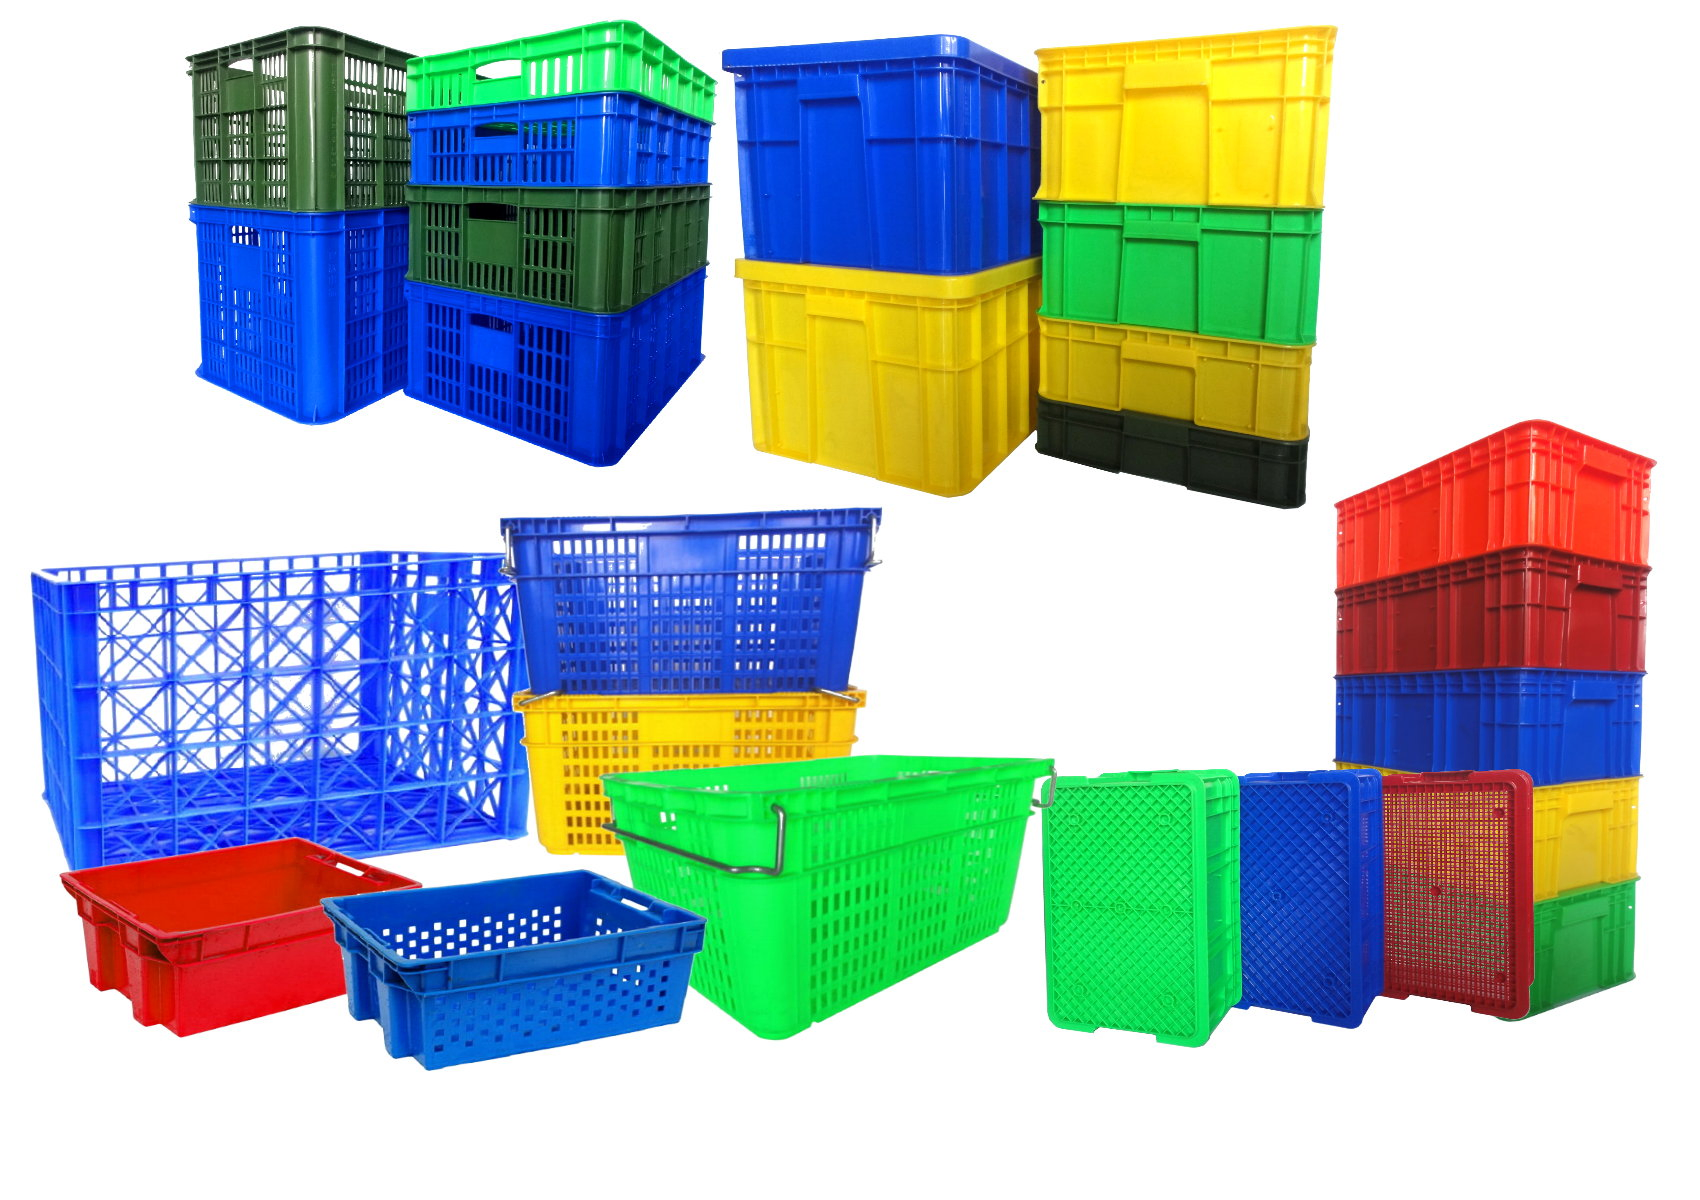 塑膠搬運箱、儲運箱、塑膠倉儲工具箱、物流籃、鐵柄搬運籃